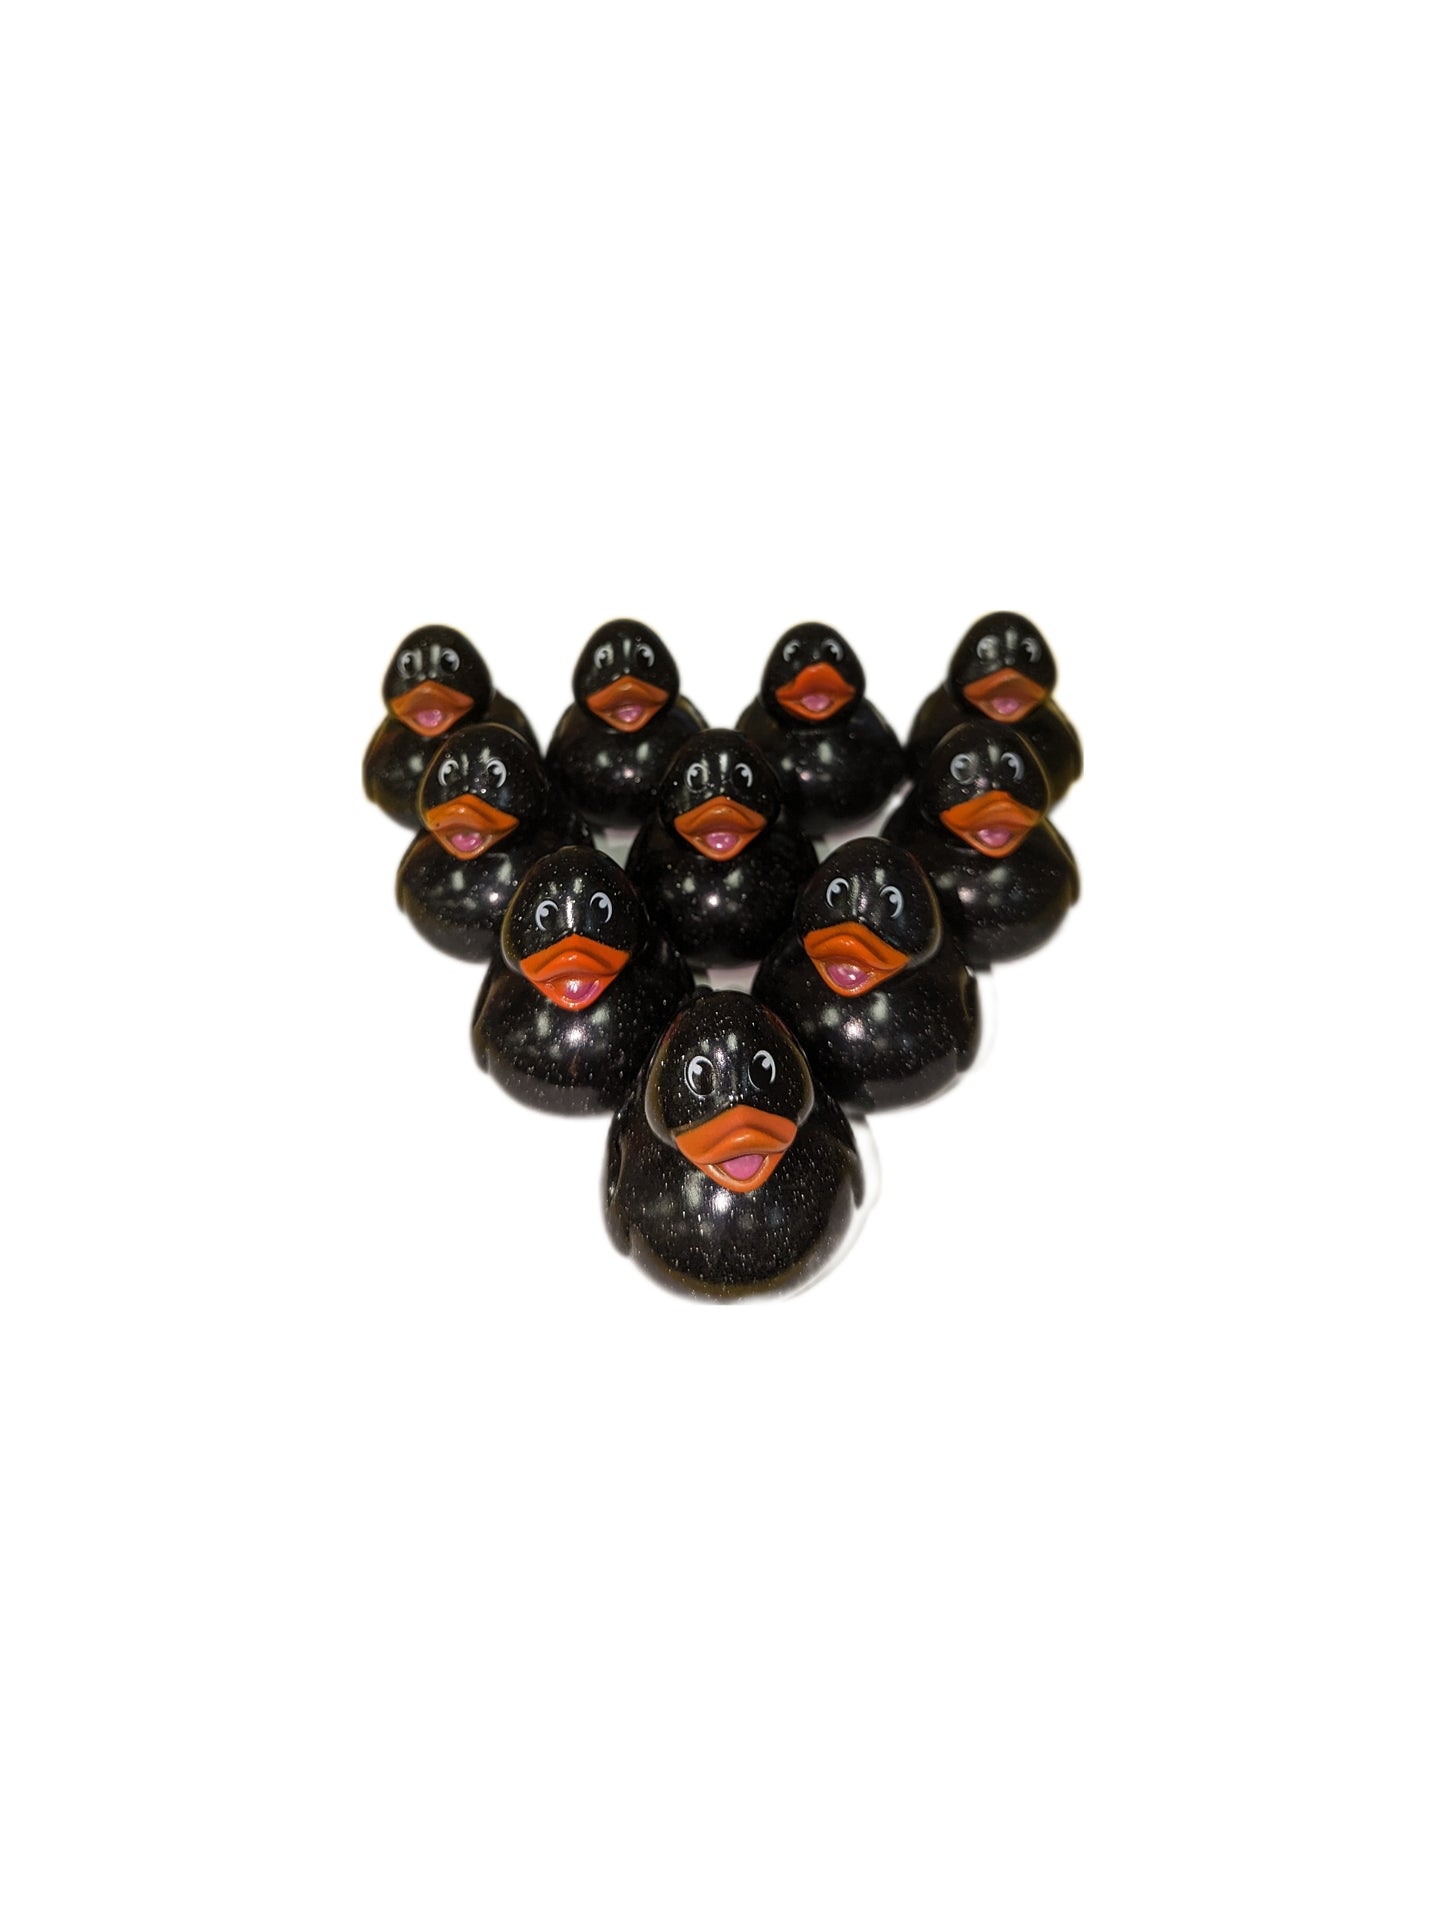 10 Black Glitter & Orange Beak Ducks - 2" Rubber Ducks